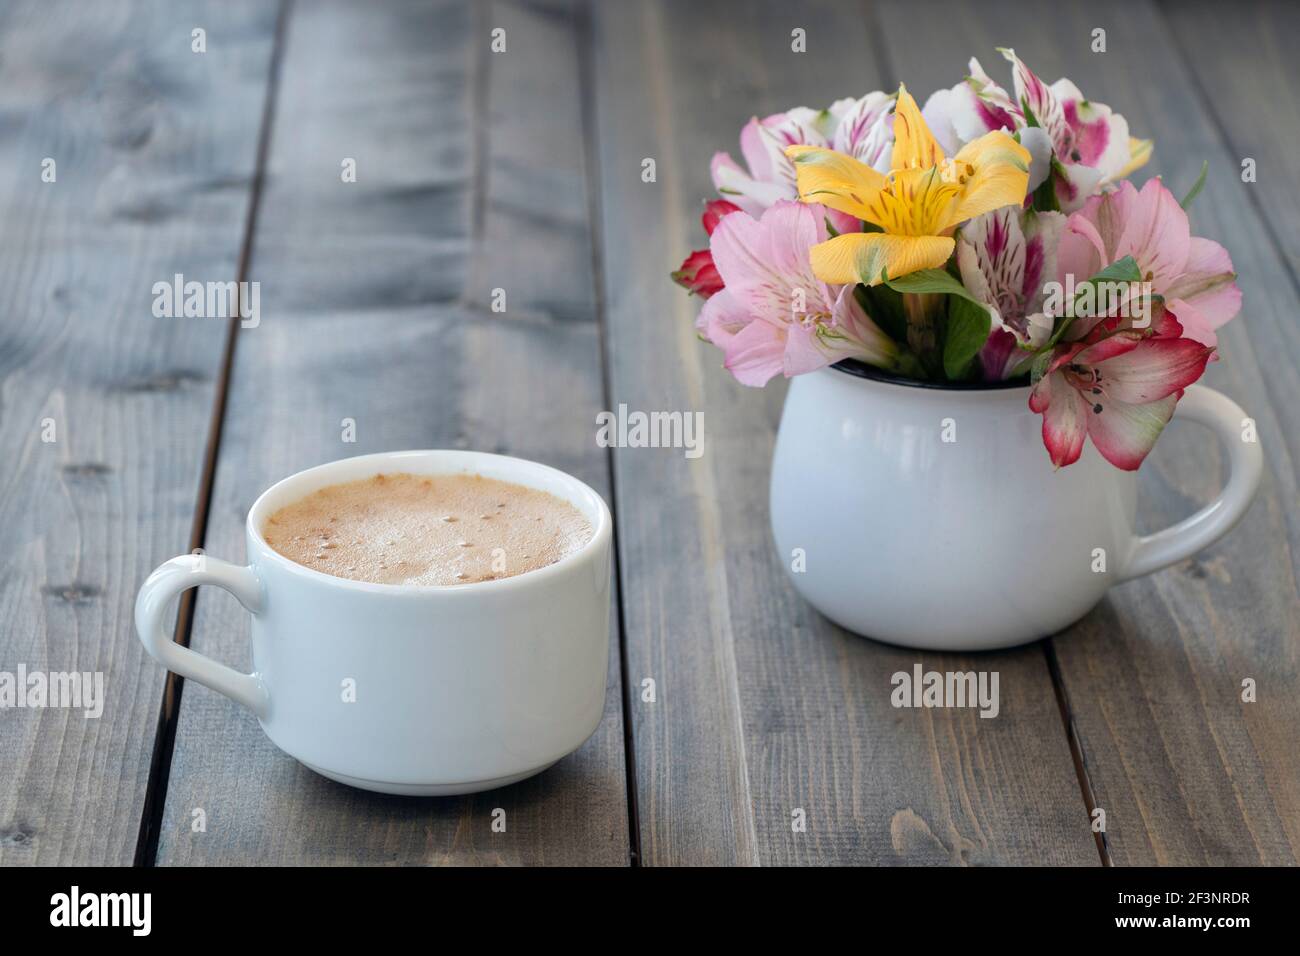 Weiße Tasse Kaffee mit bunten Alstroemerien in weißem Becher auf Holztisch. Rosa, gelbe und lila Blüten in Tasse. Konzept von Guten Morgen. Sof Stockfoto